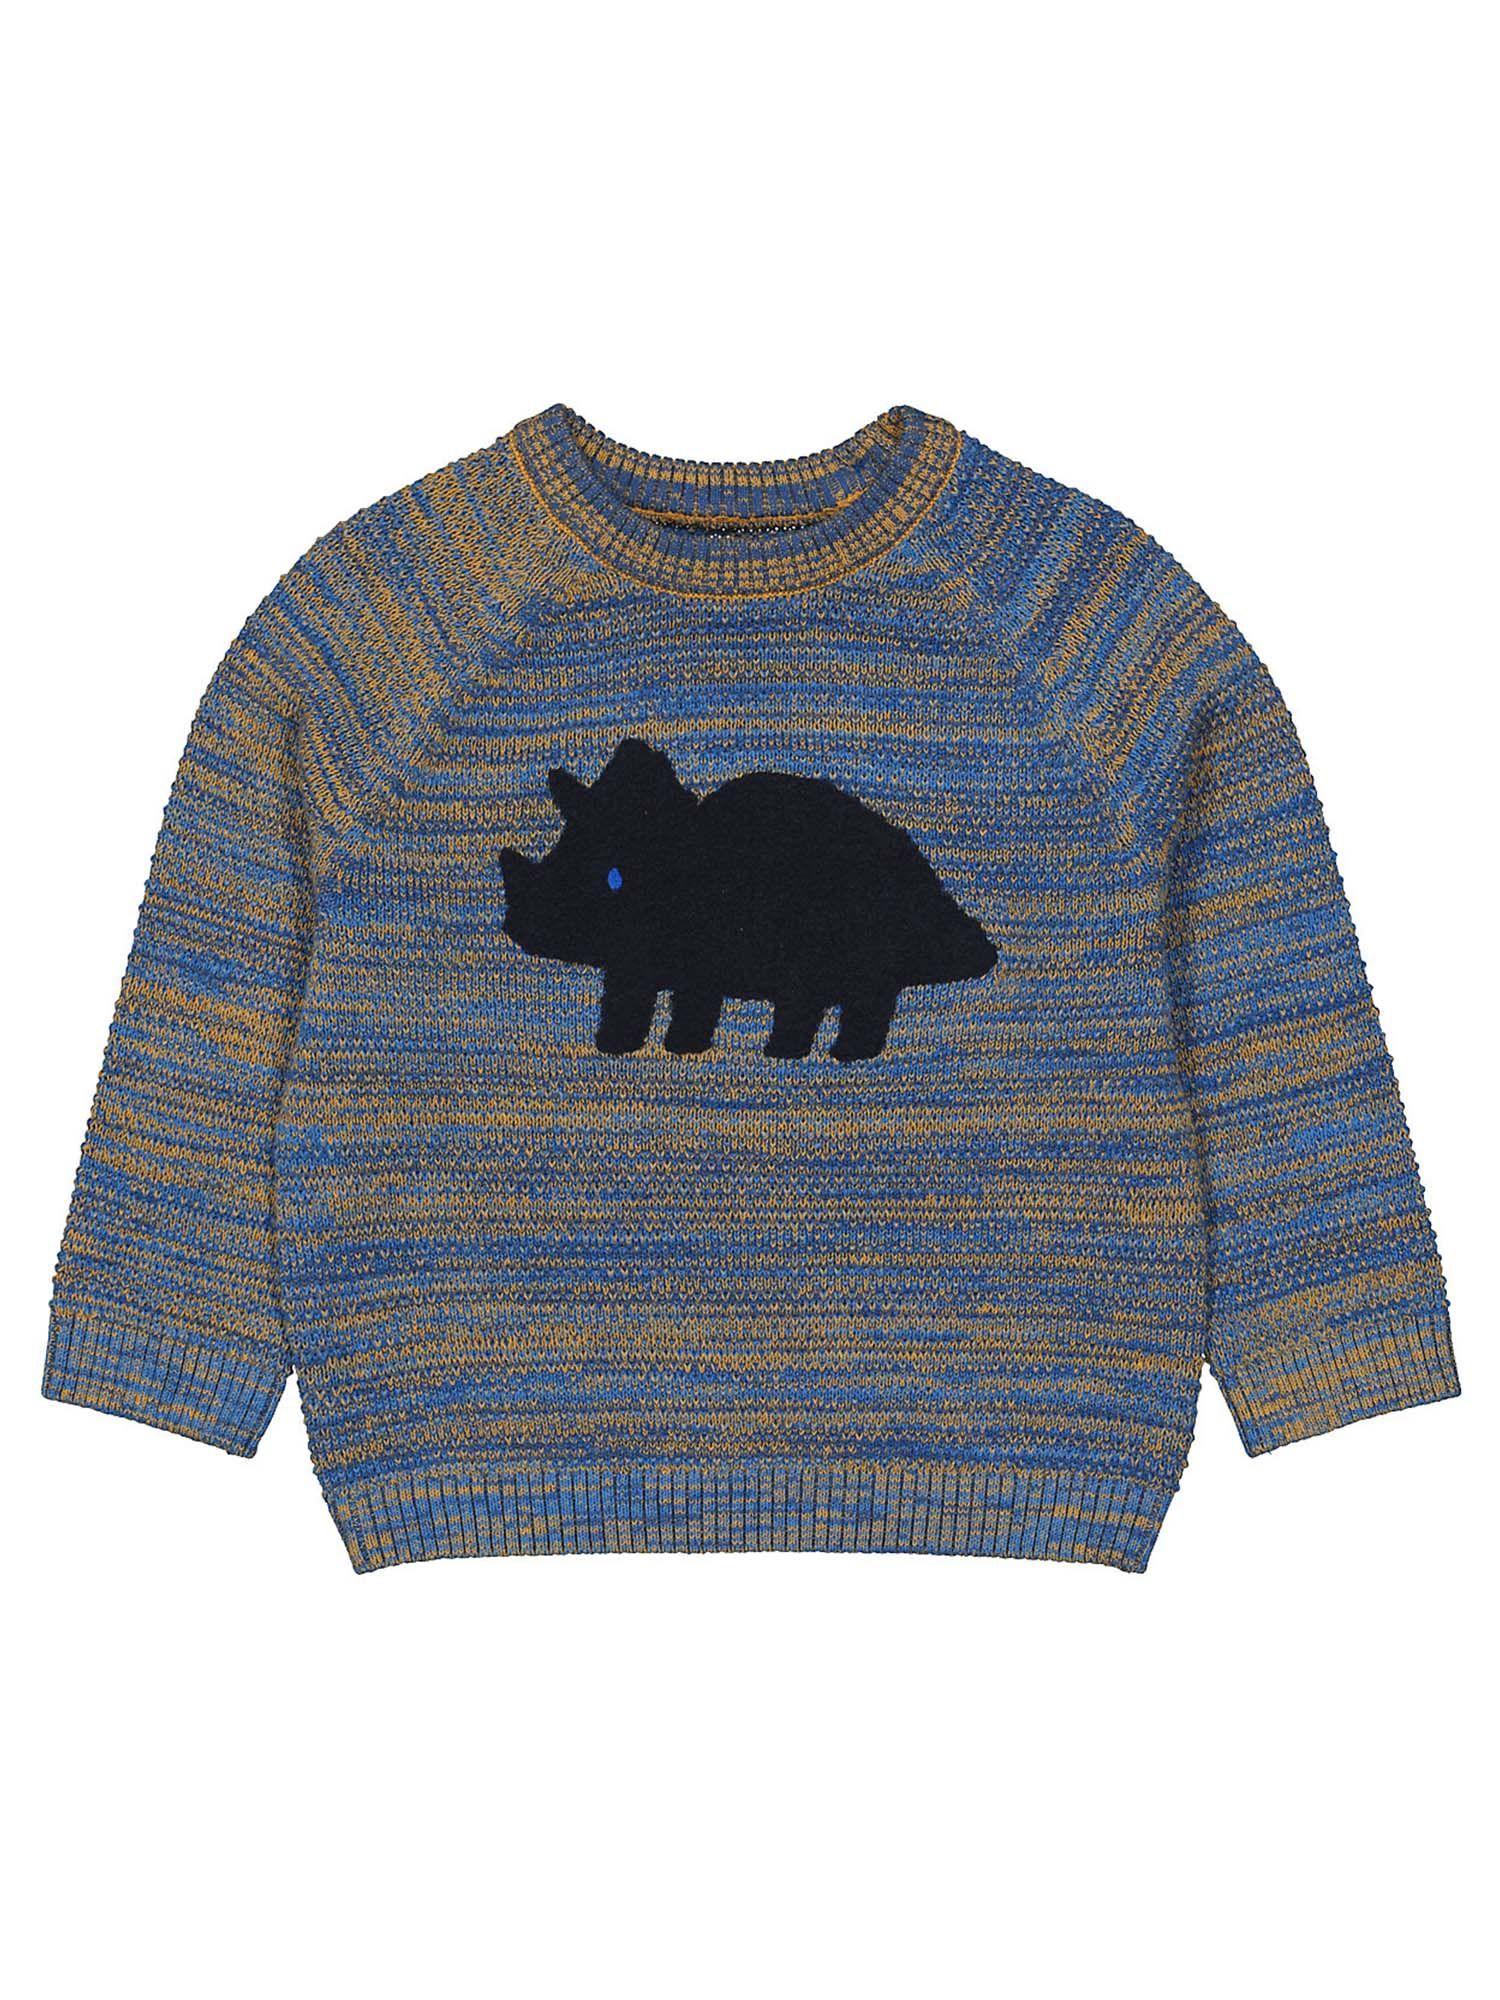 blue printed knitted jumper sweatshirt